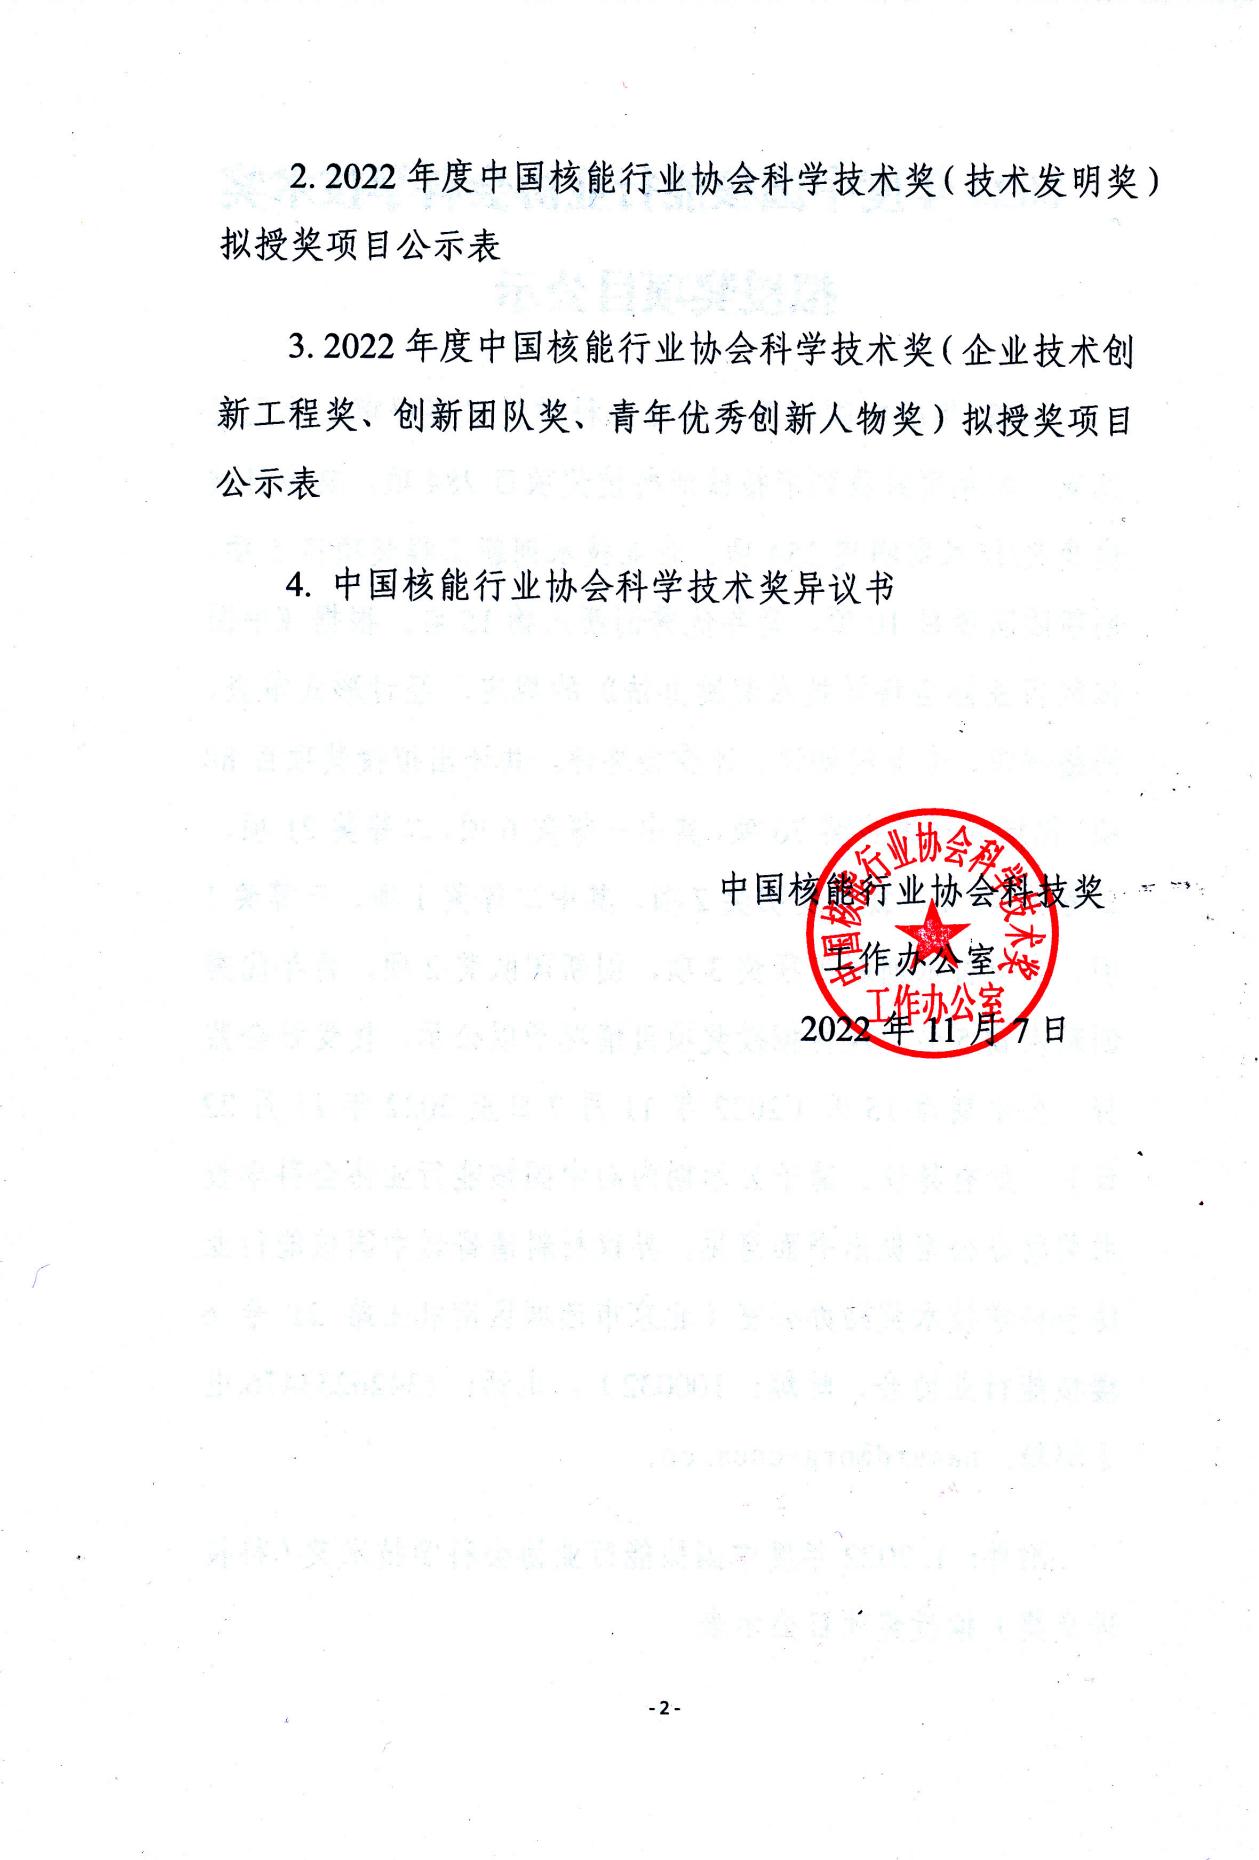 2022年度中国核能行业协会科学技术奖拟授奖项目公示（函）_01.jpg